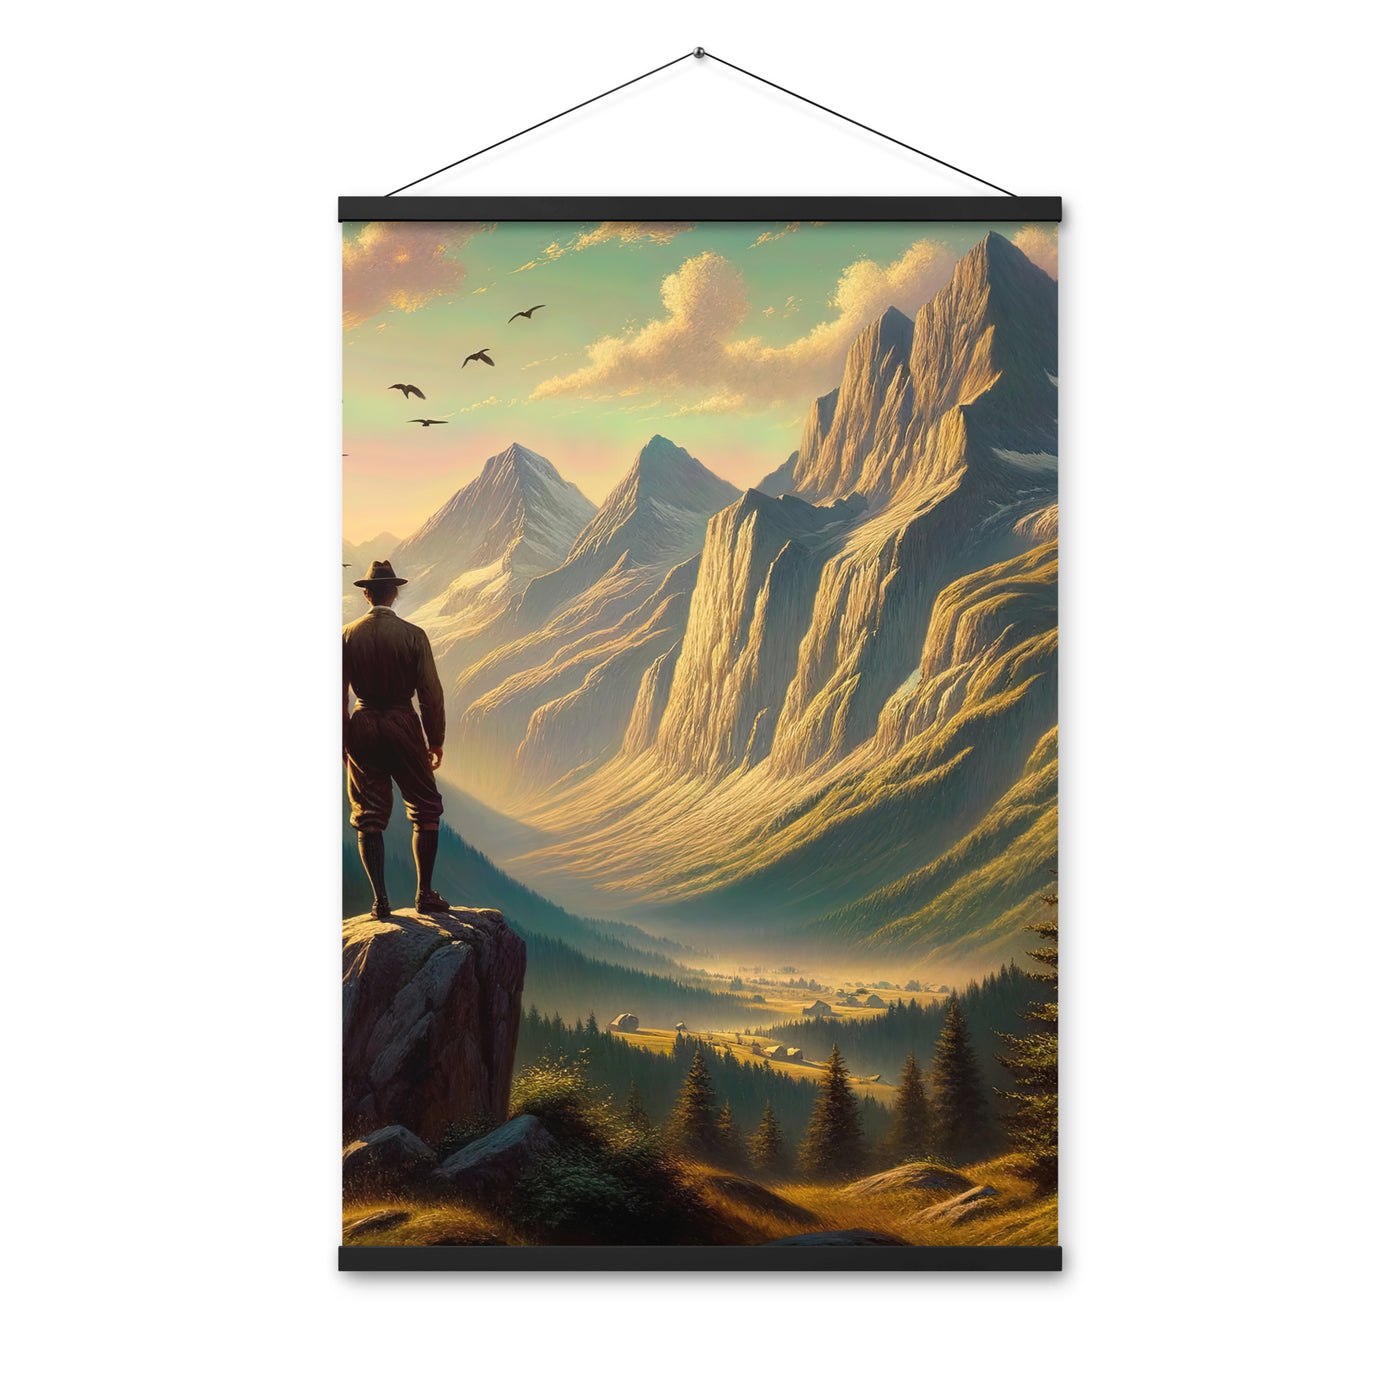 Ölgemälde eines Schweizer Wanderers in den Alpen bei goldenem Sonnenlicht - Premium Poster mit Aufhängung wandern xxx yyy zzz 61 x 91.4 cm